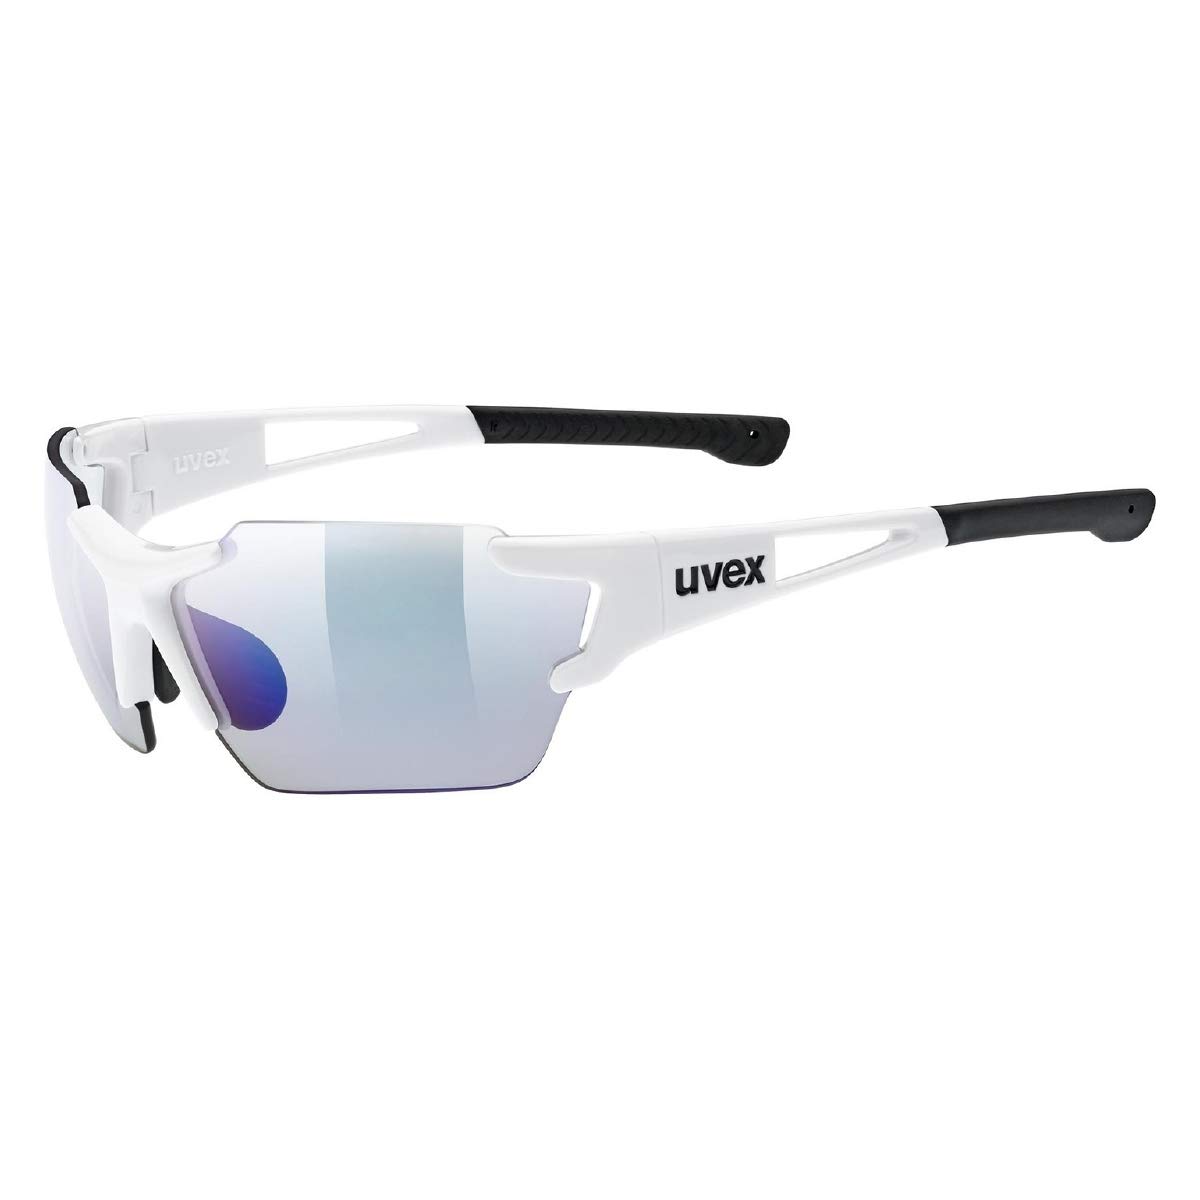 uvex sportstyle 803 race V small - Sportbrille für Damen und Herren - selbsttönend & verspiegelt - beschlagfrei - white/blue - one size